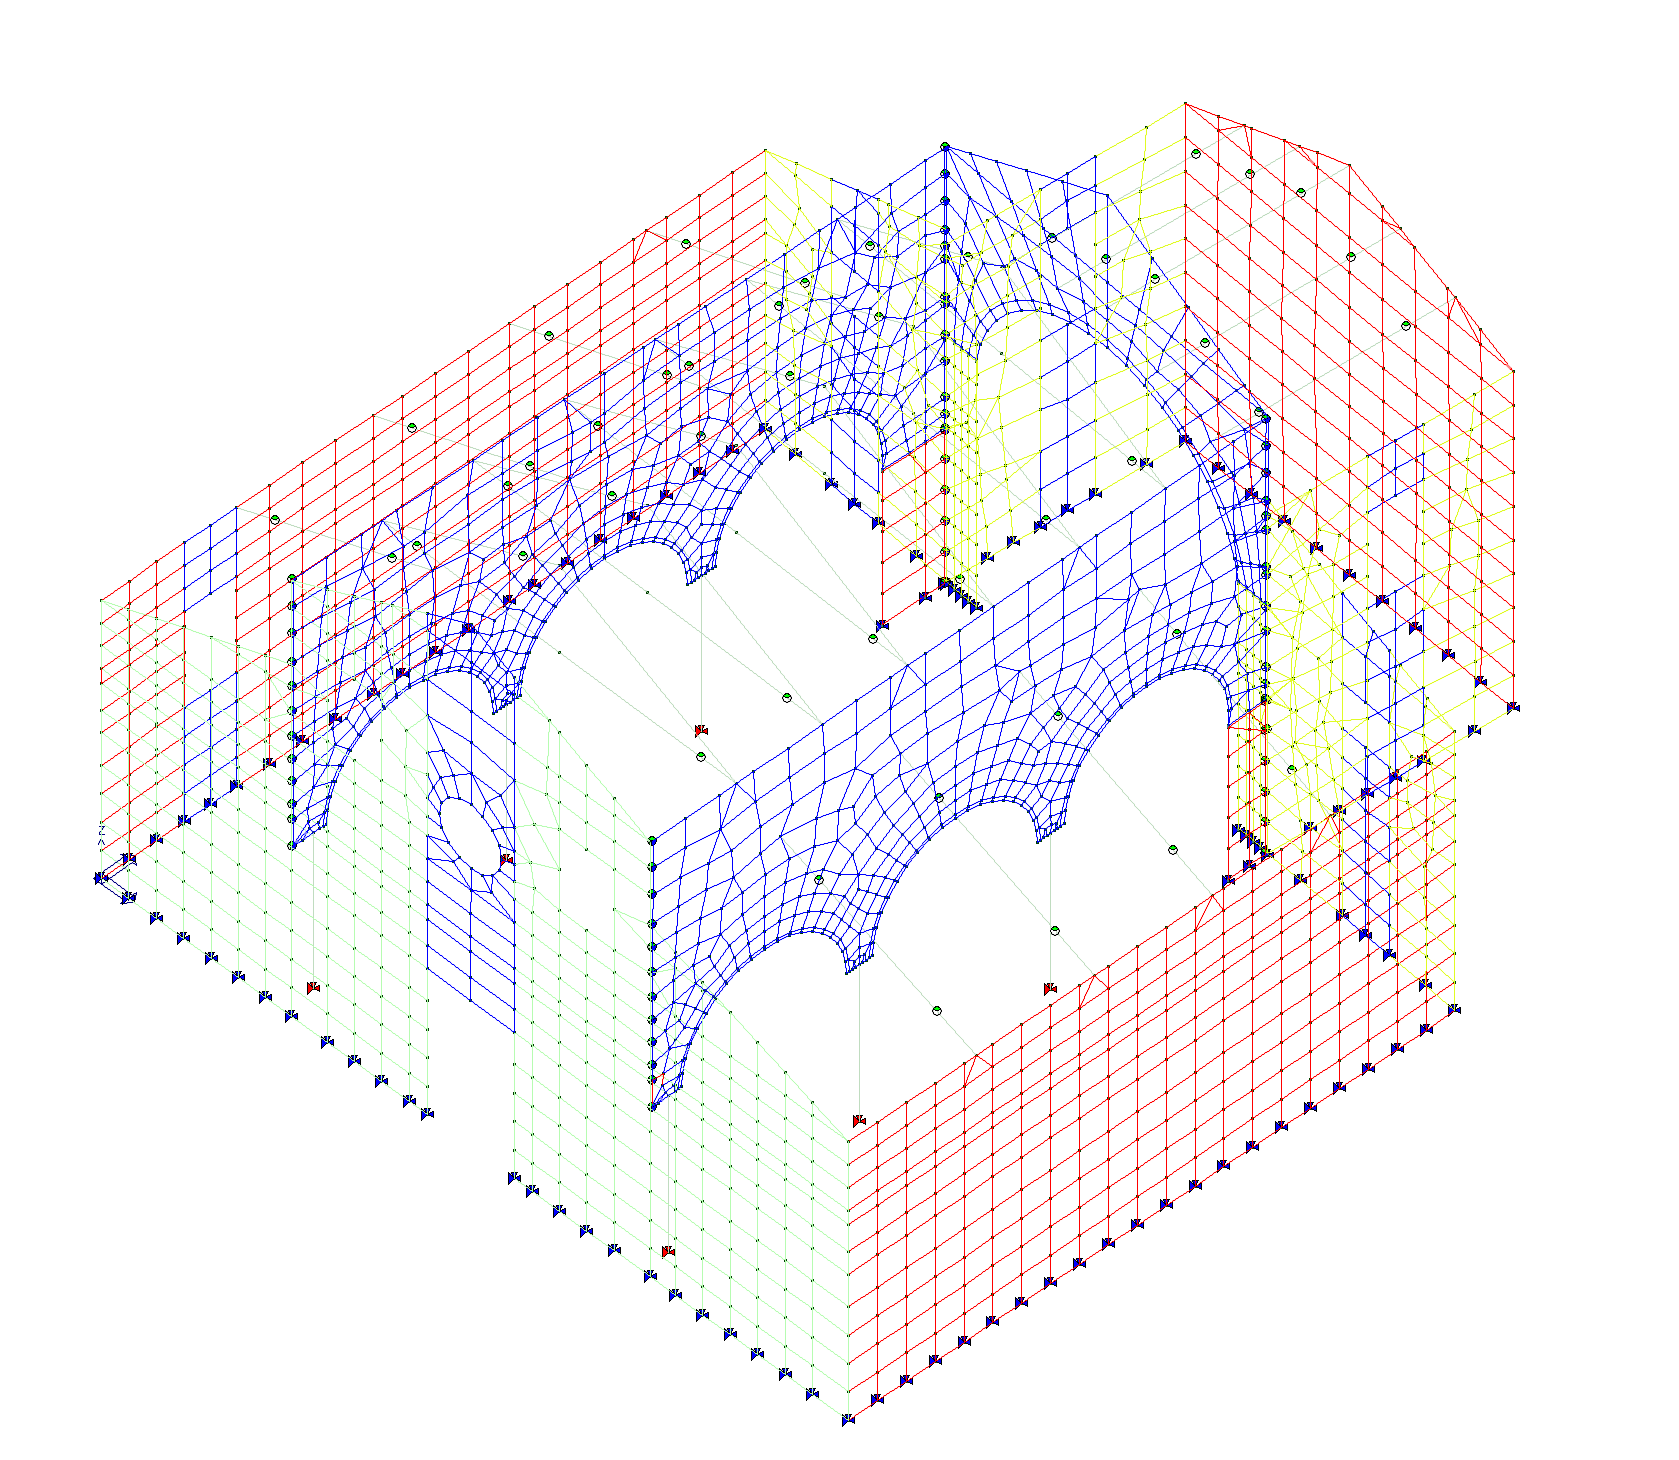 Vista 3D modello di calcolo struttura in muratura